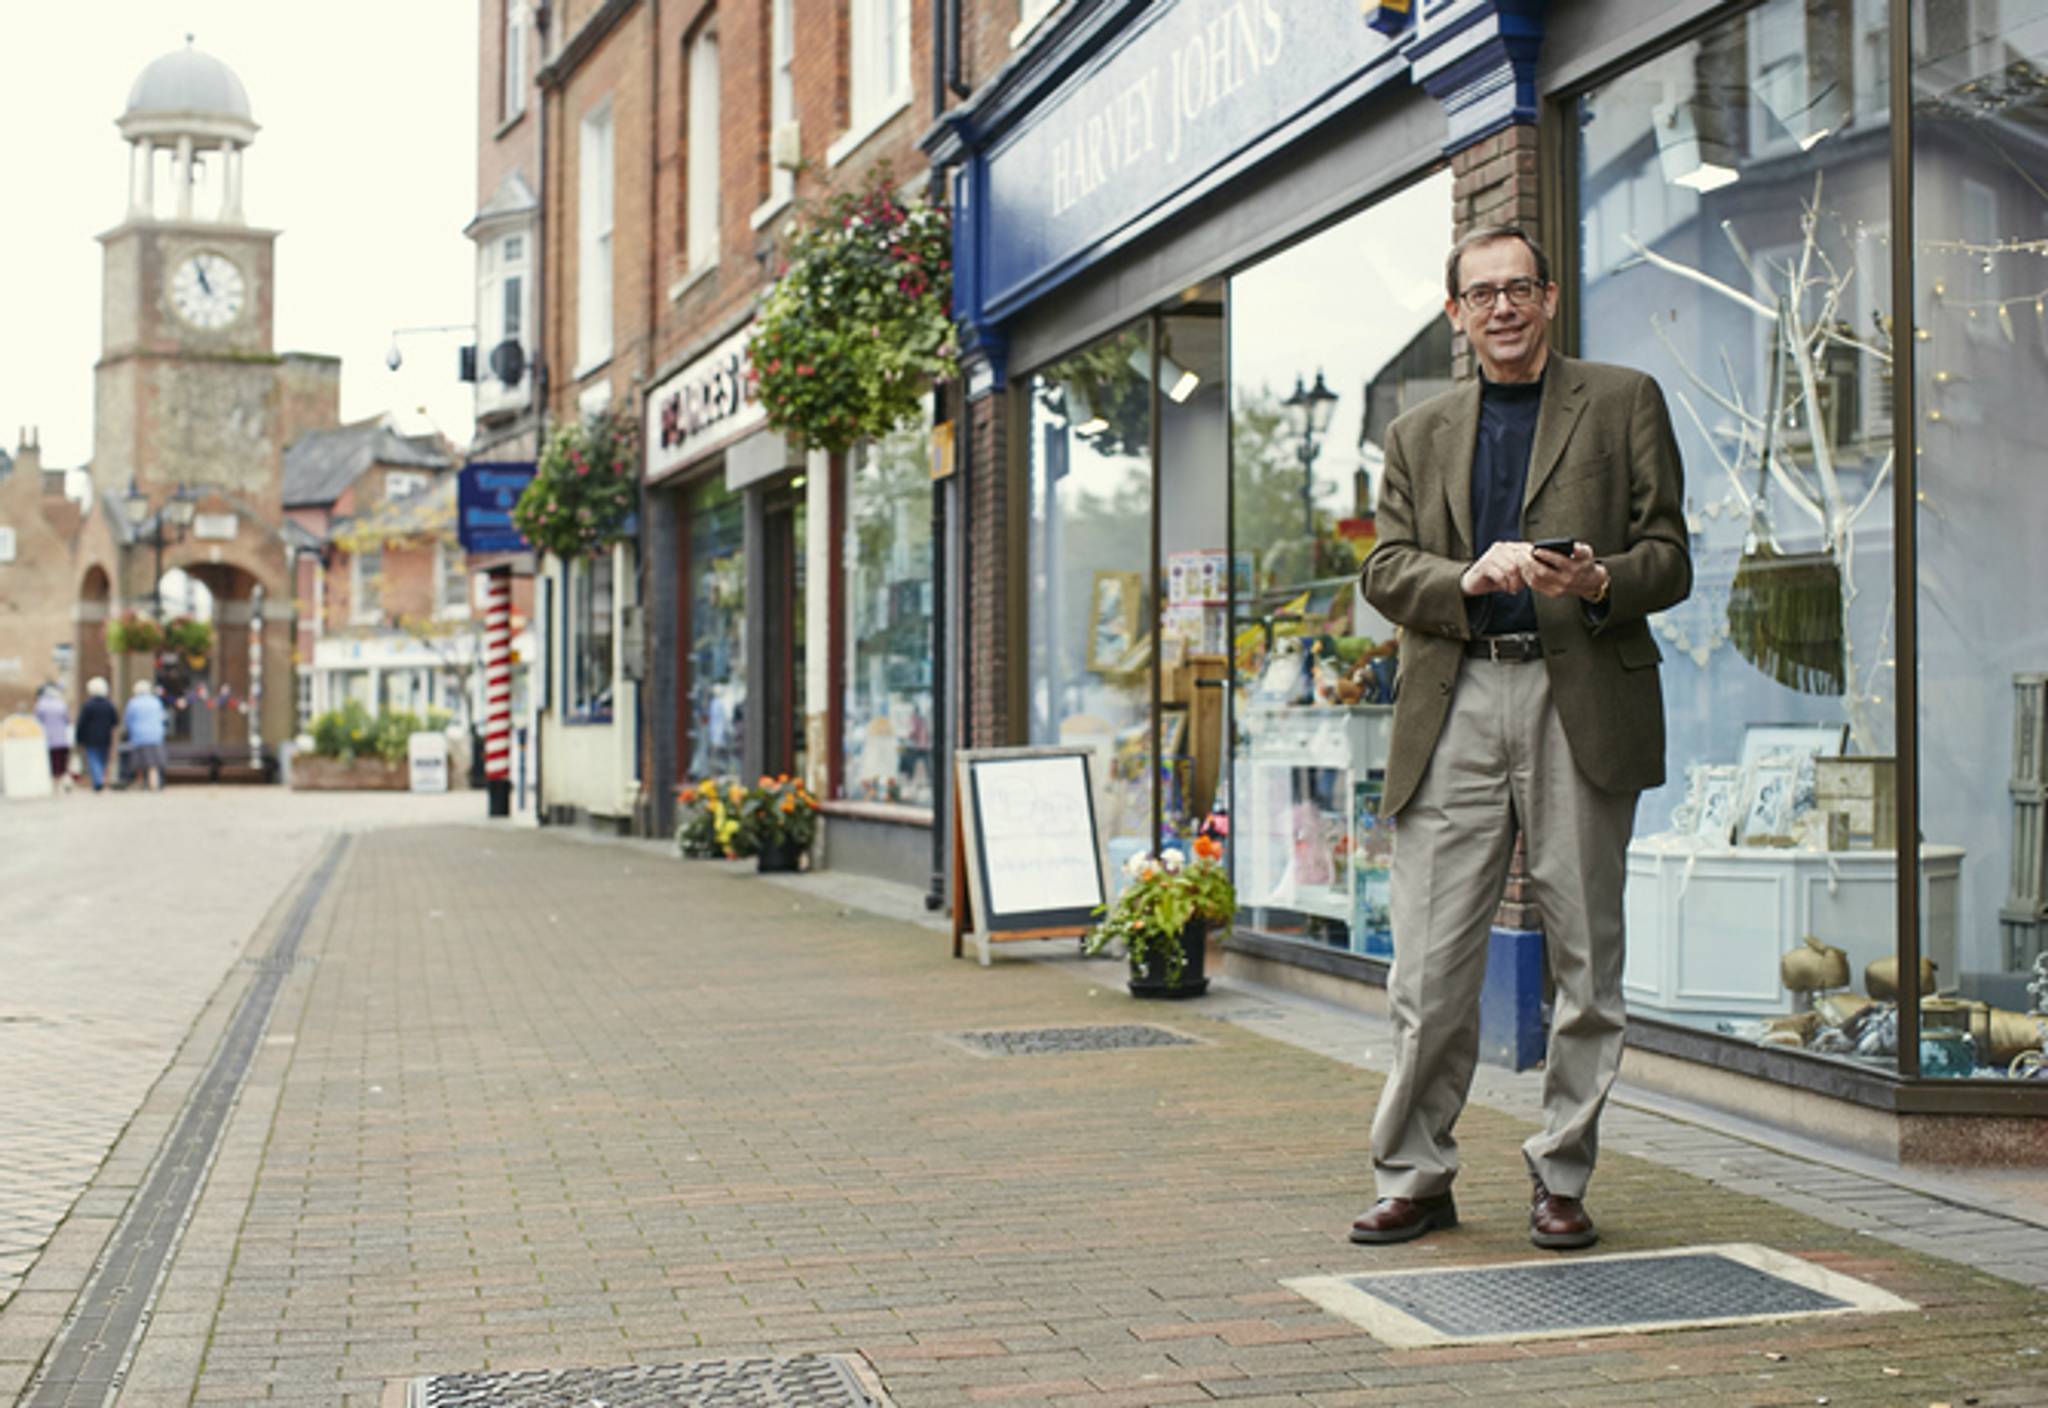 UK’s first smart WiFi pavement